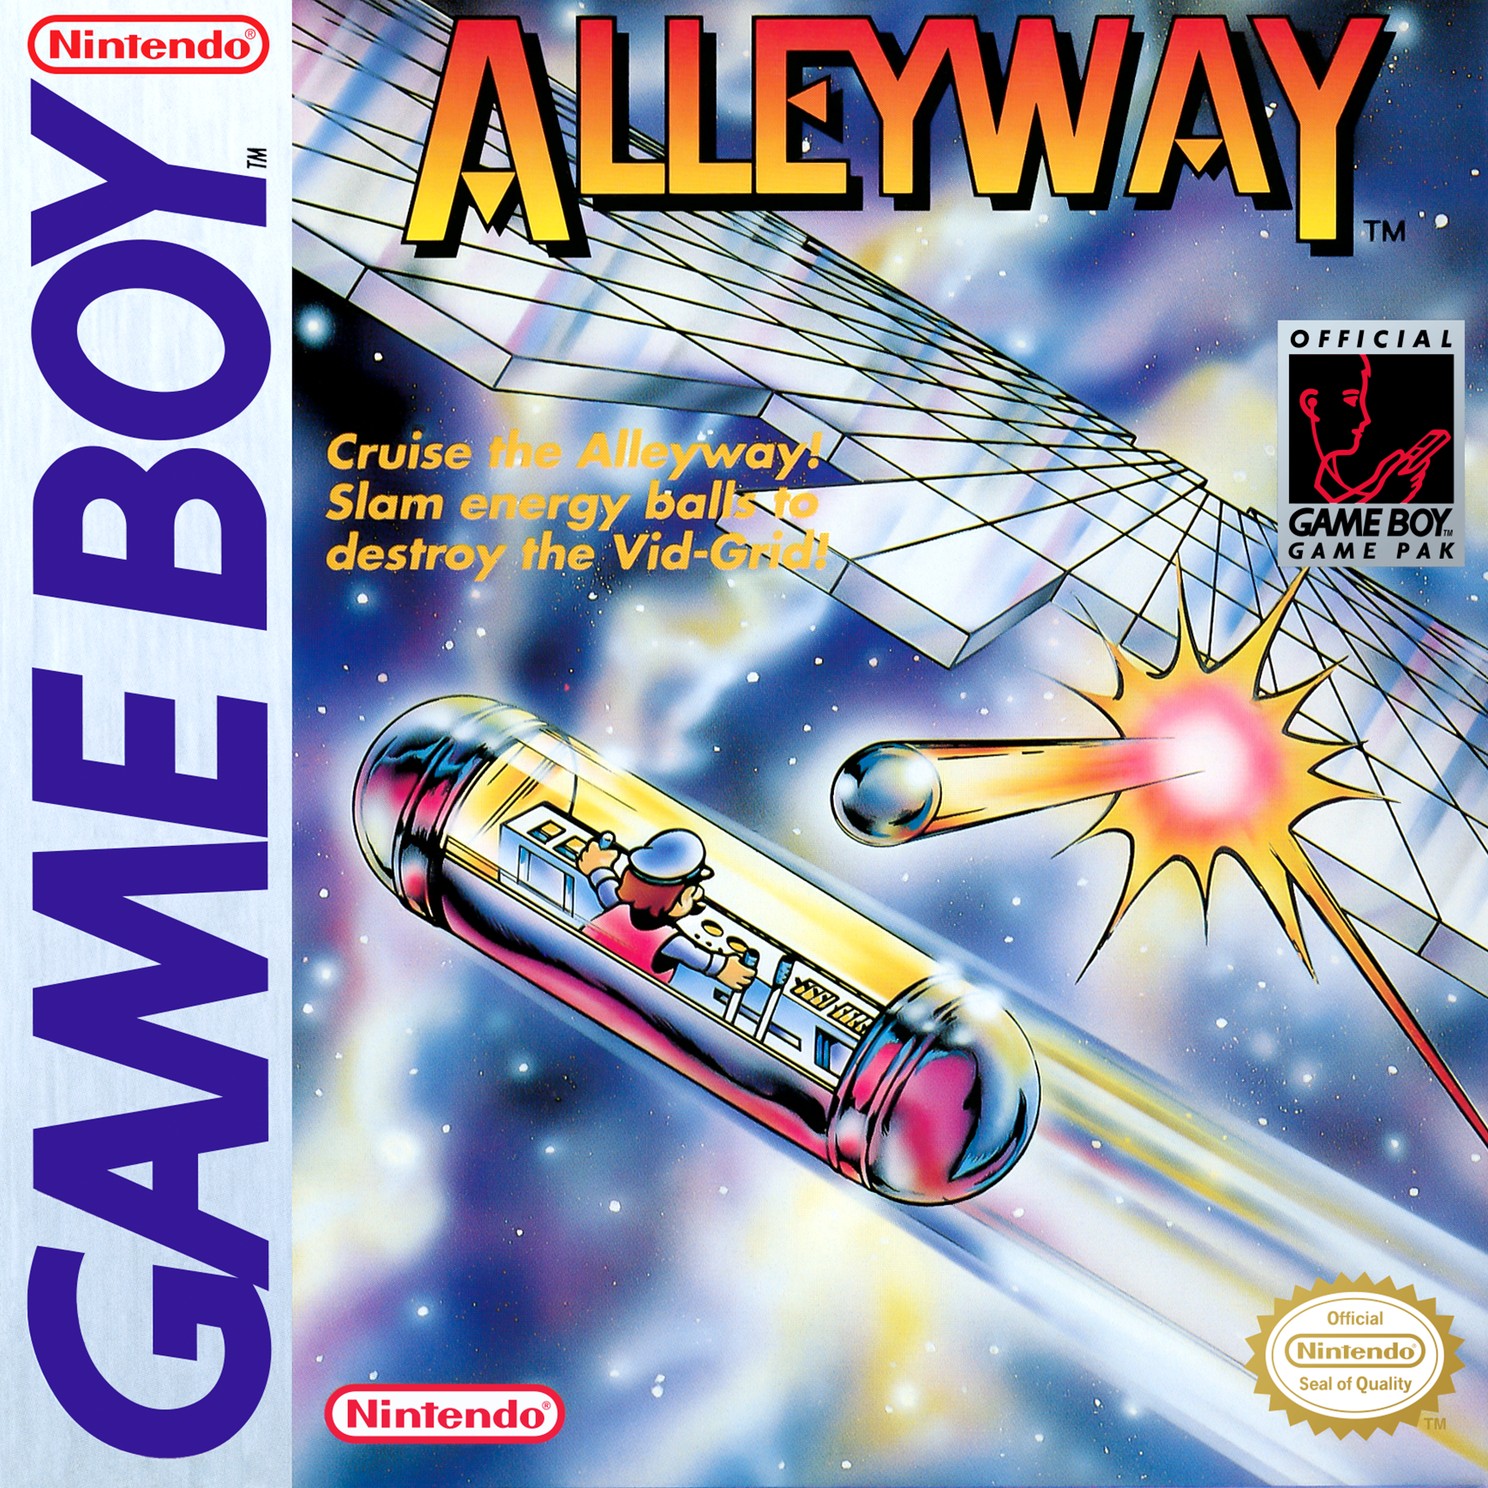 File:Alleyway na cover.jpg